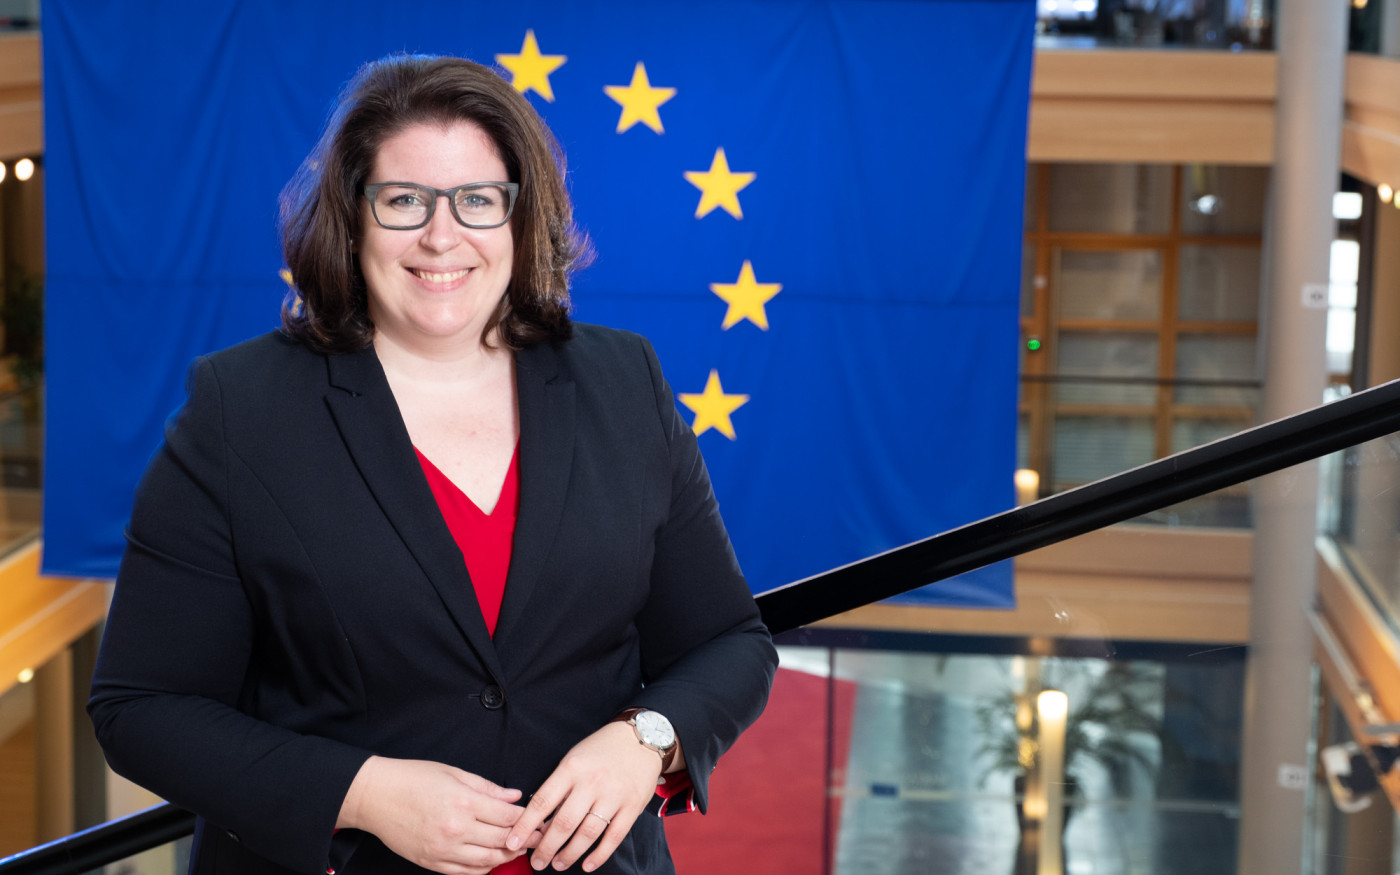 Gifhorner Abgeordnete Lena Düpont gibt im Interview spannende Einblicke in ihr erstes Jahr im EU-Parlament